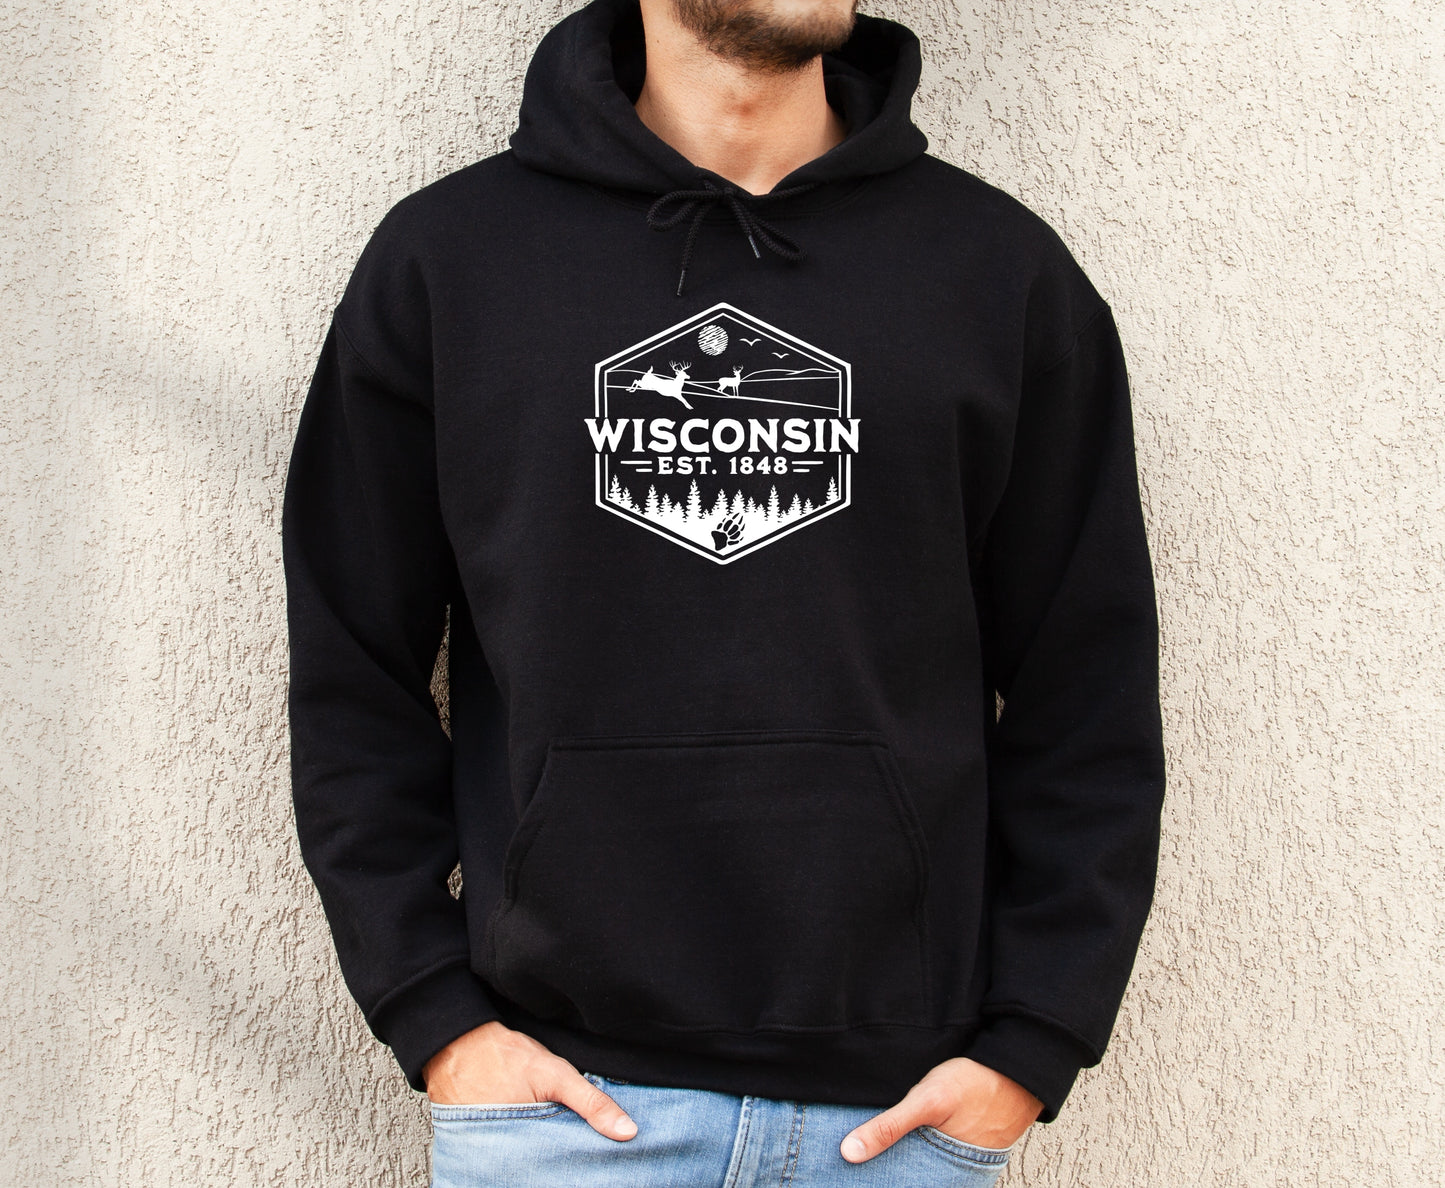 Wisconsin 1848 Men's Hoodie